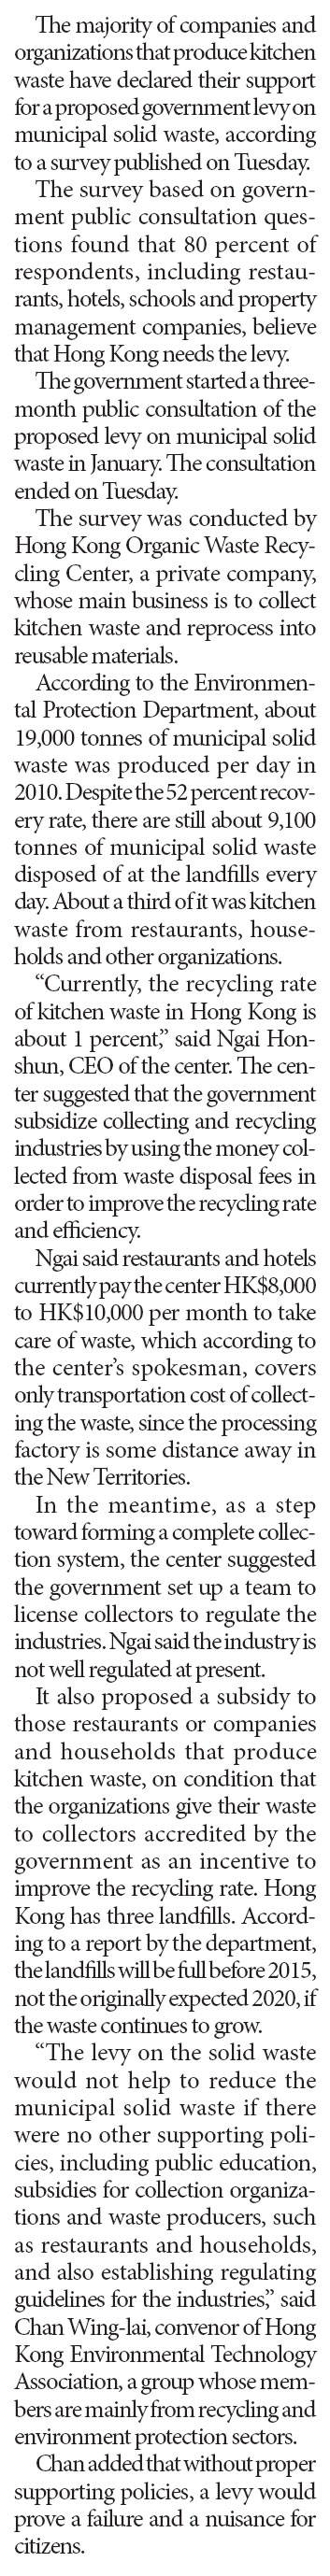 Recyclers seek govt subsidies on wastes